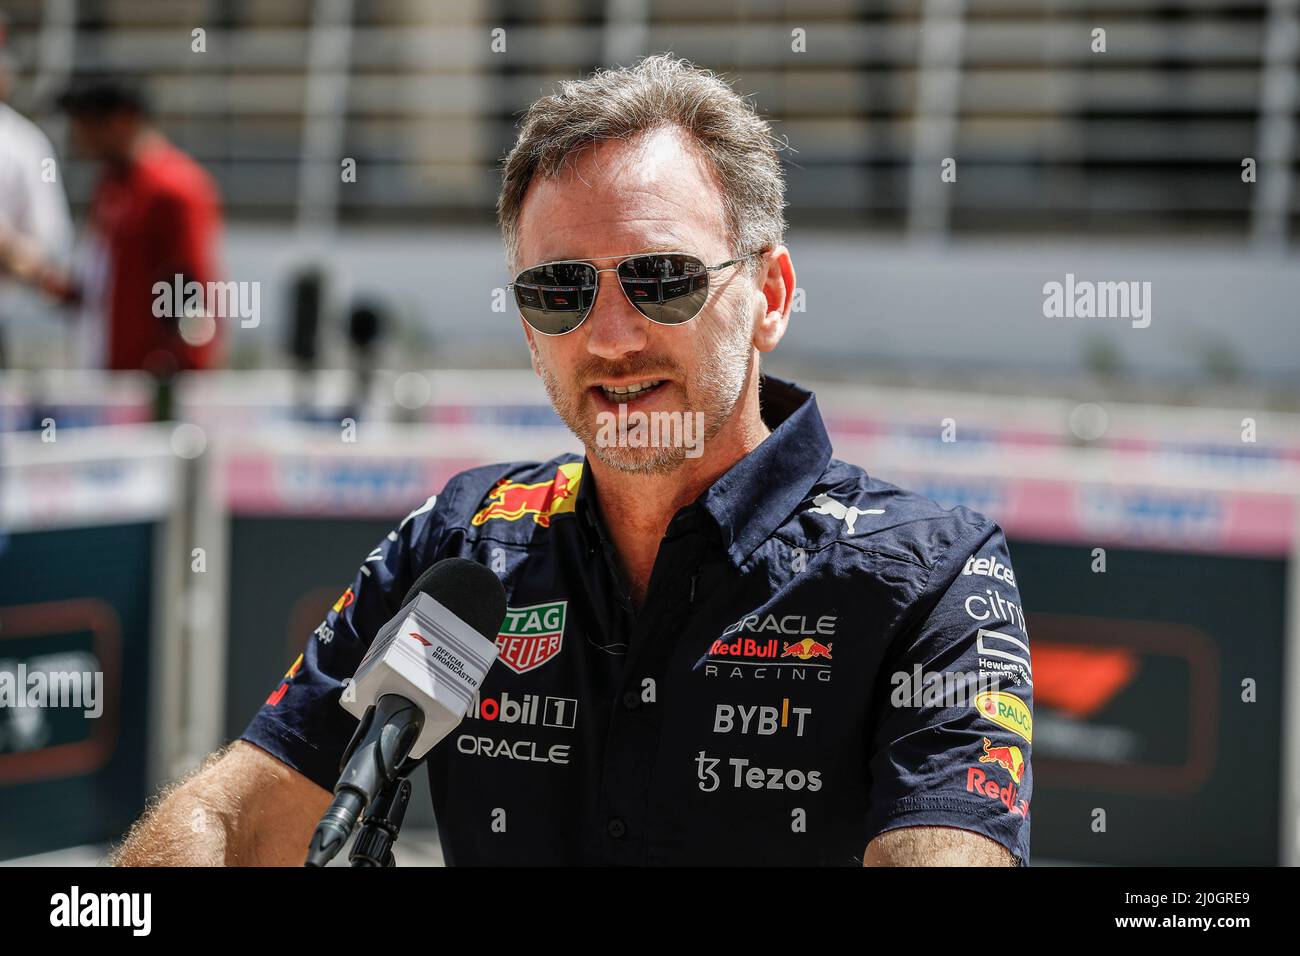 HORNER Christian (gbr), Team principal de Red Bull Racing, portrait lors de  la Formule 1 Gulf Air Bahreïn Grand Prix 2022, 1st tour du Championnat du  monde de Formule 1 2022 de